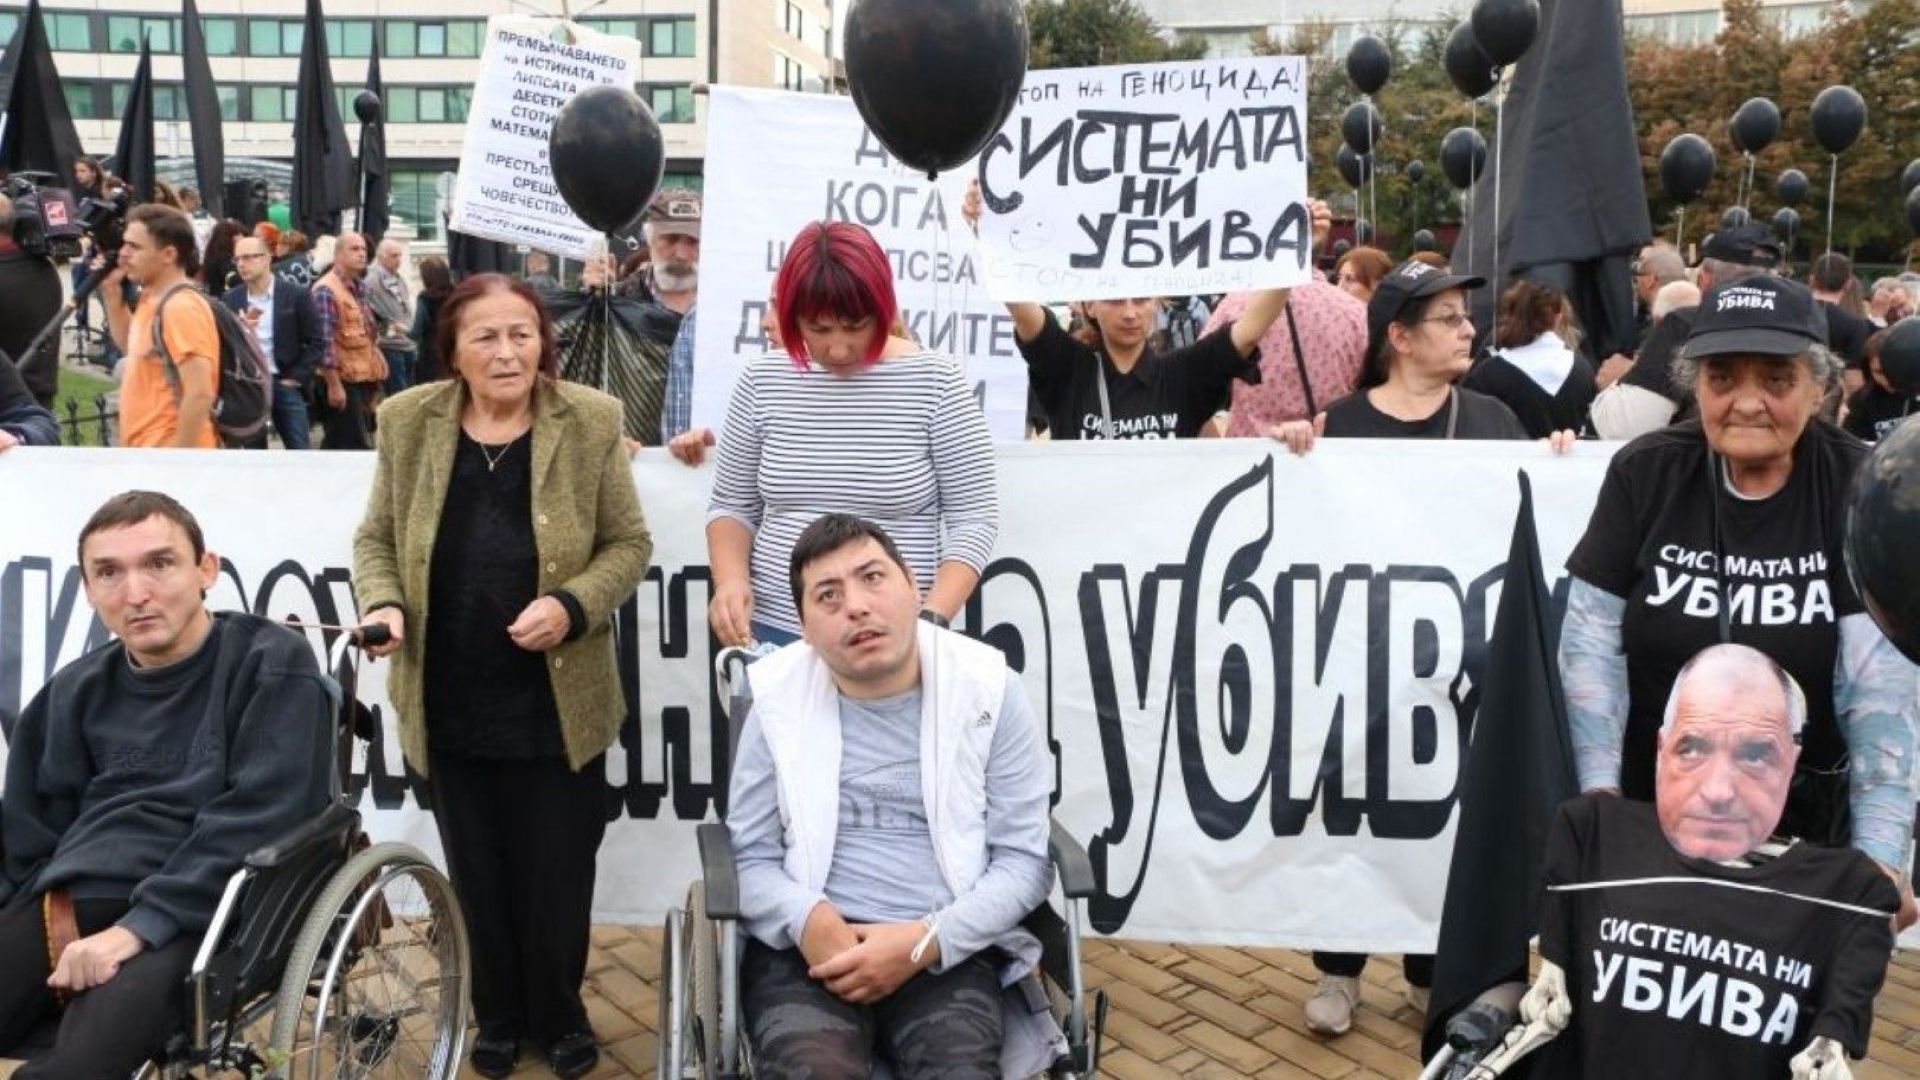 Една от протестиращите майки на деца с увреждания, Вера Иванова,